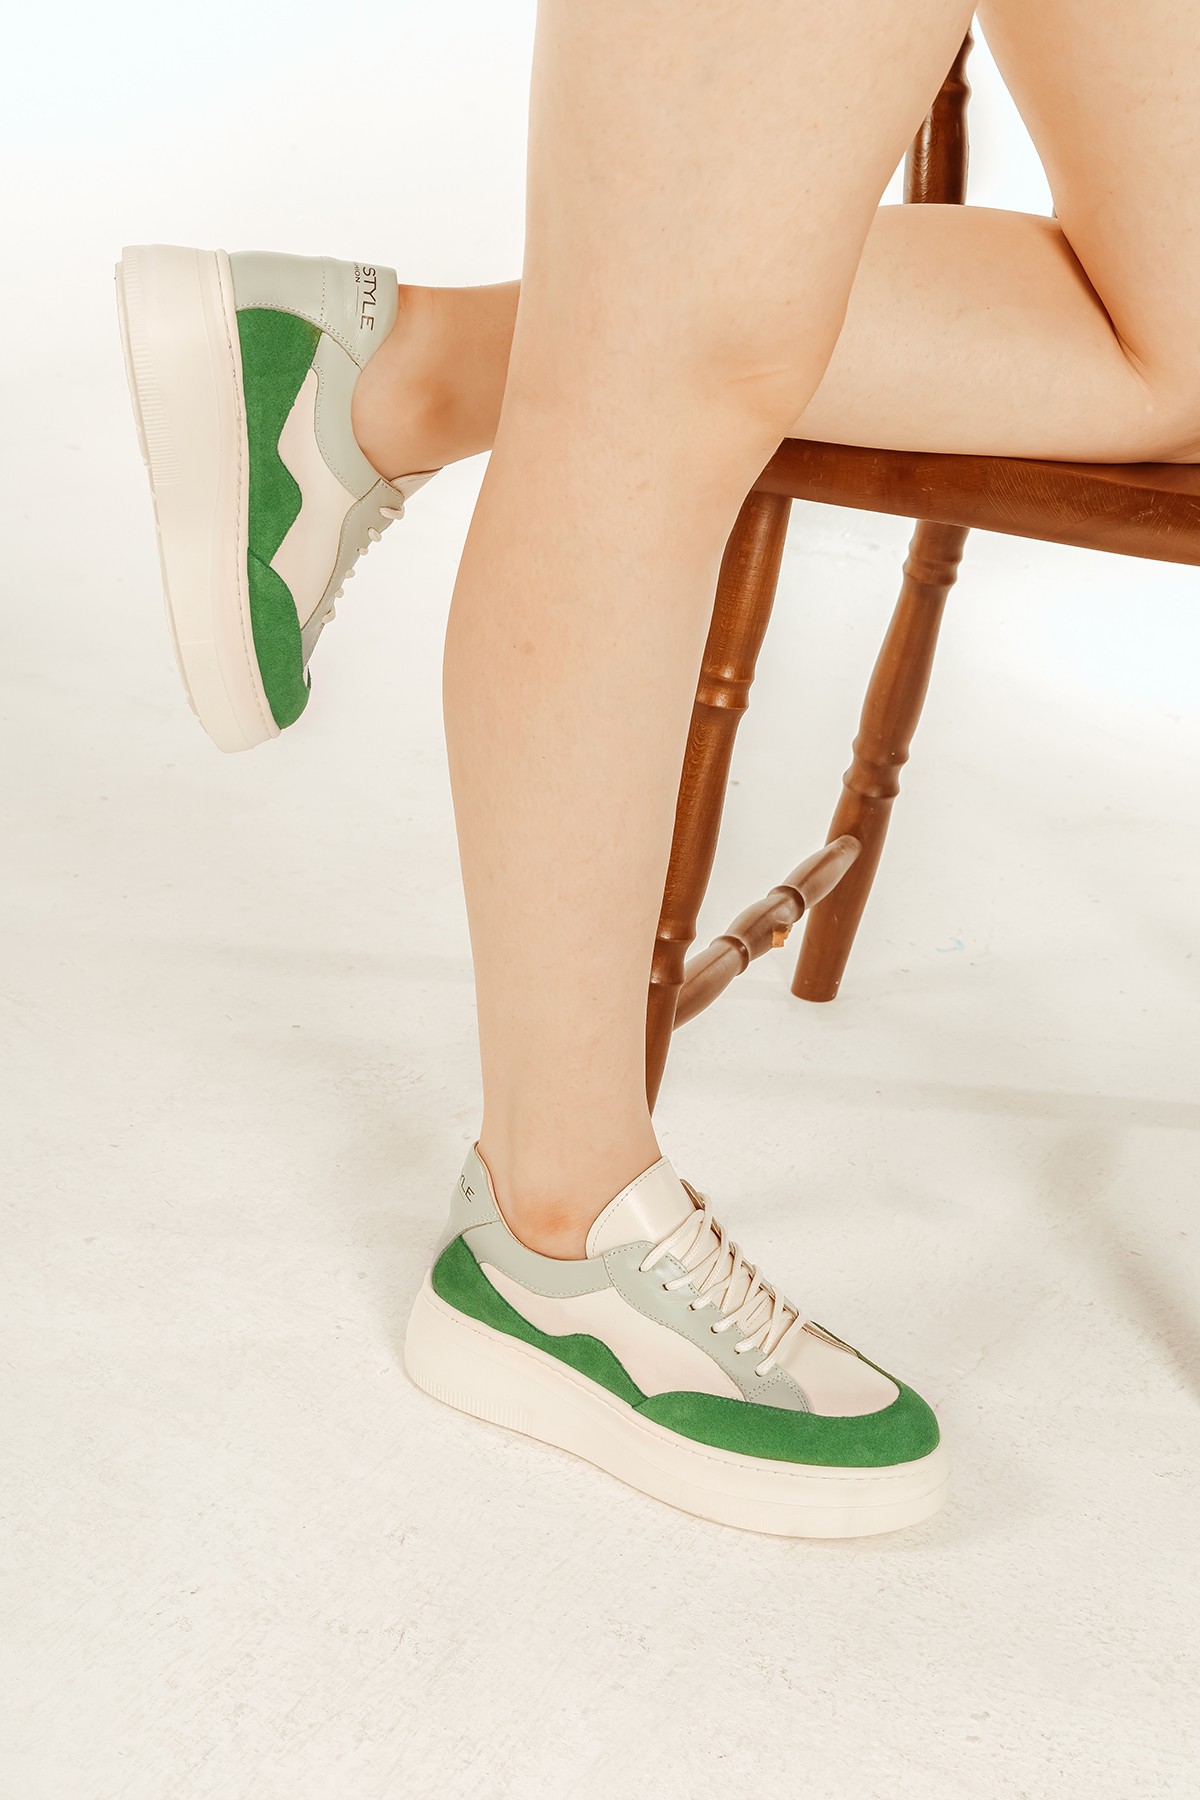 Cooliza Hakiki Deri Sneaker Yüksek Taban Renkli Rahat Günlük Kadın Spor Ayakkabı BEYAZ-YEŞİL - Beyaz-Yeşil